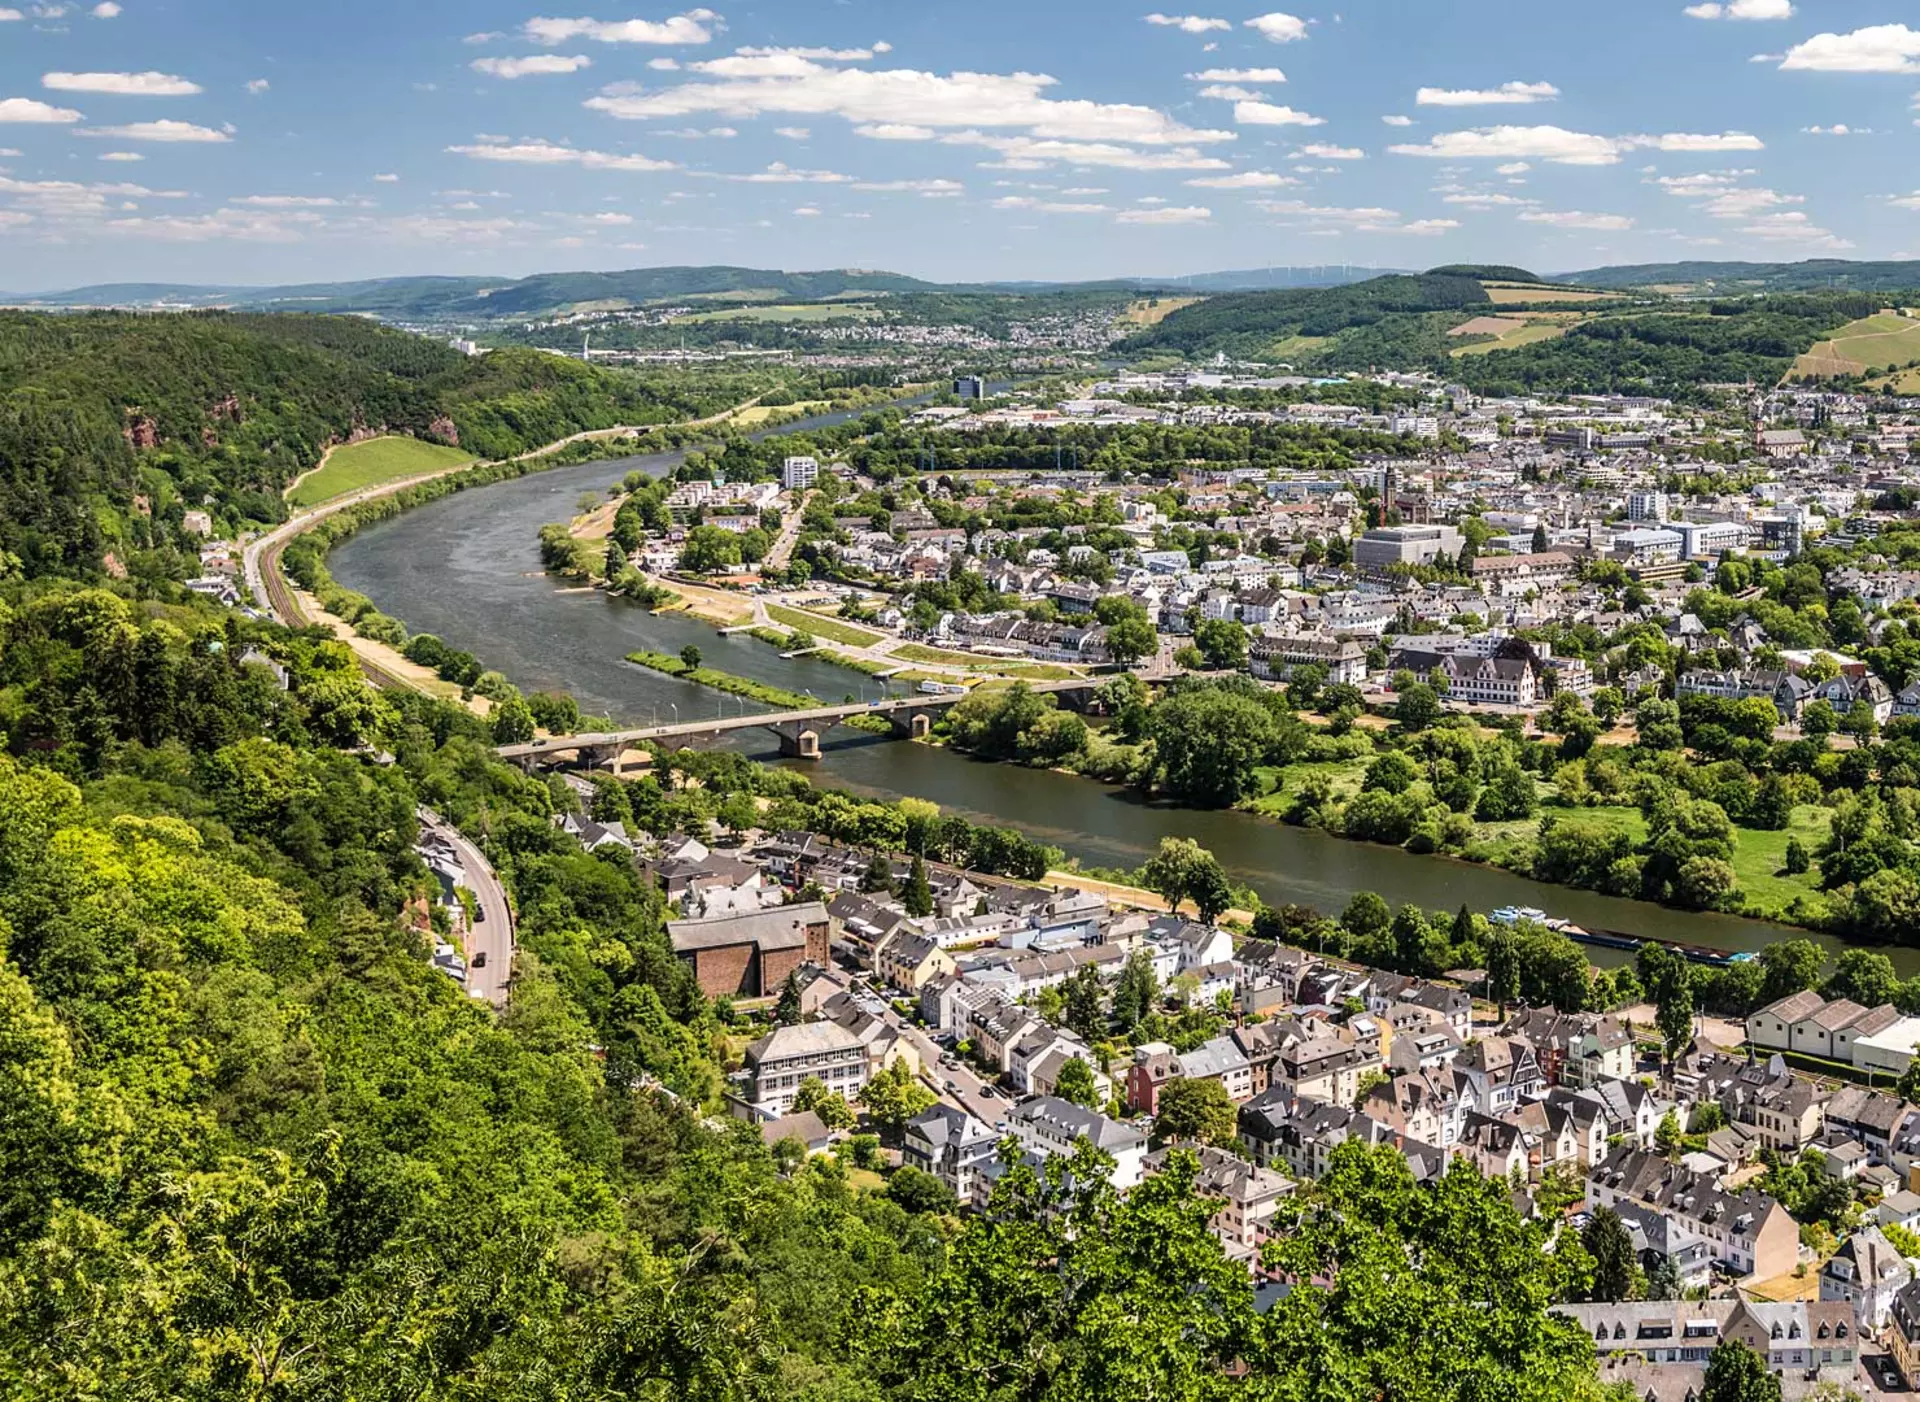 im Eifelurlaub die Stadt Trier, die älteste Stadt Deutschlands, besuchen